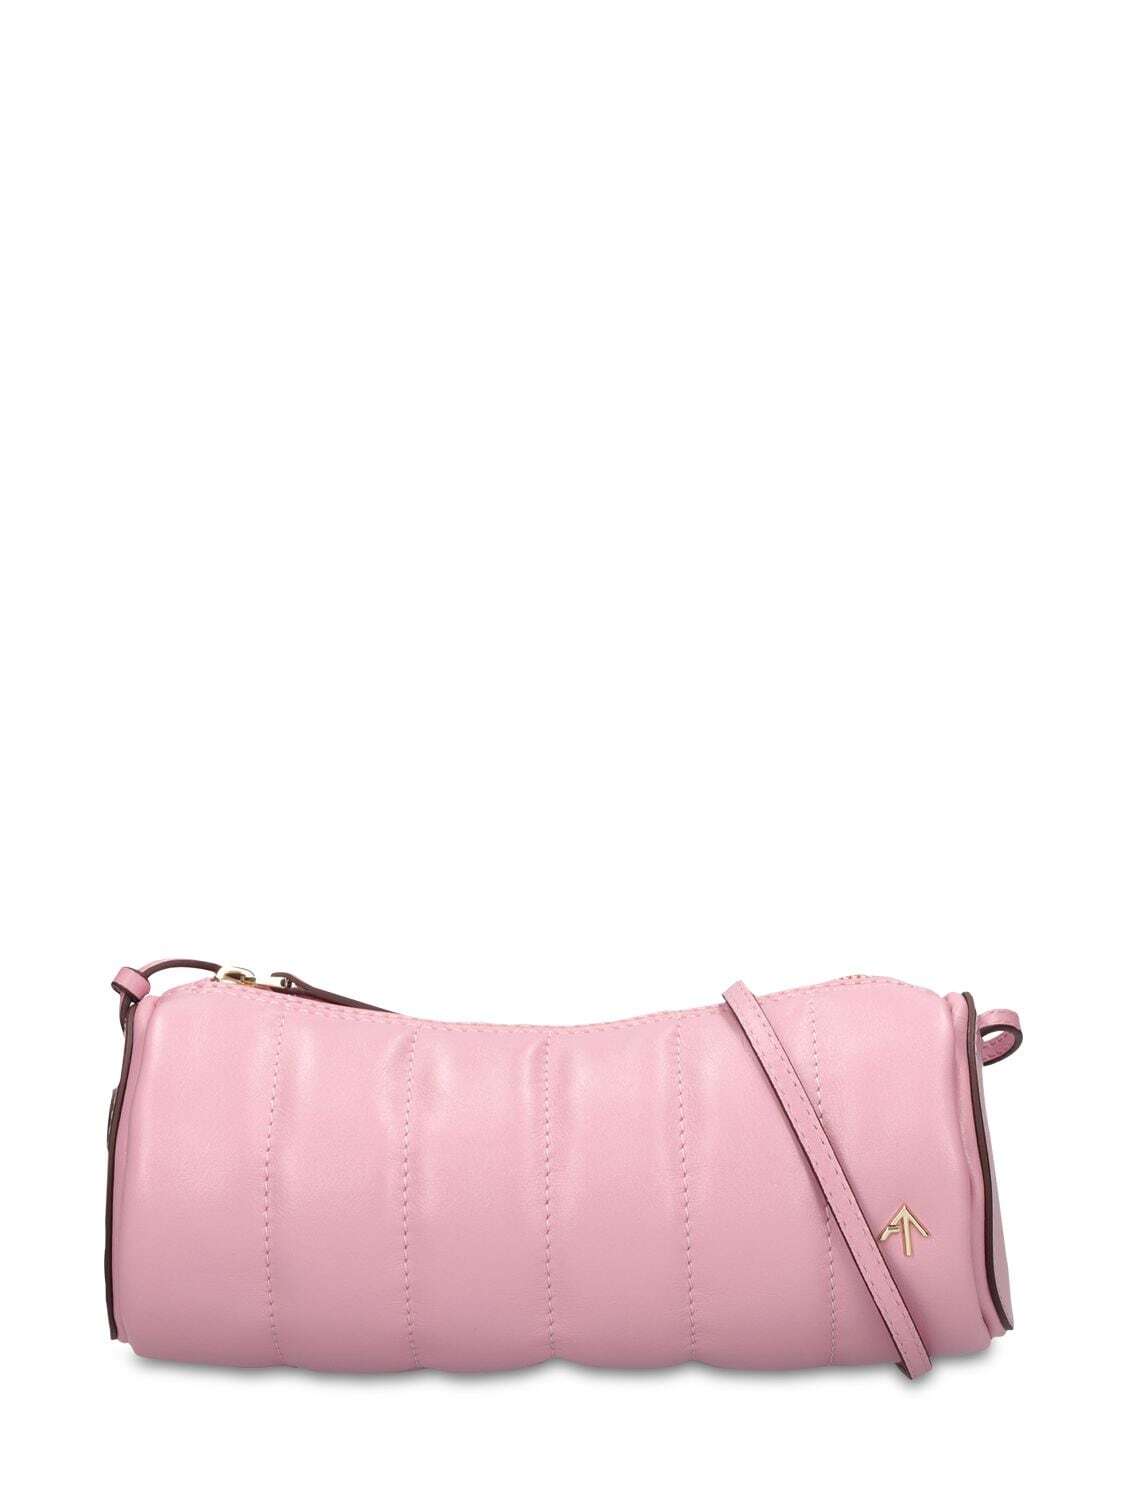 MANU ATELIER Padded Cylinder Leather Shoulder Bag in pink